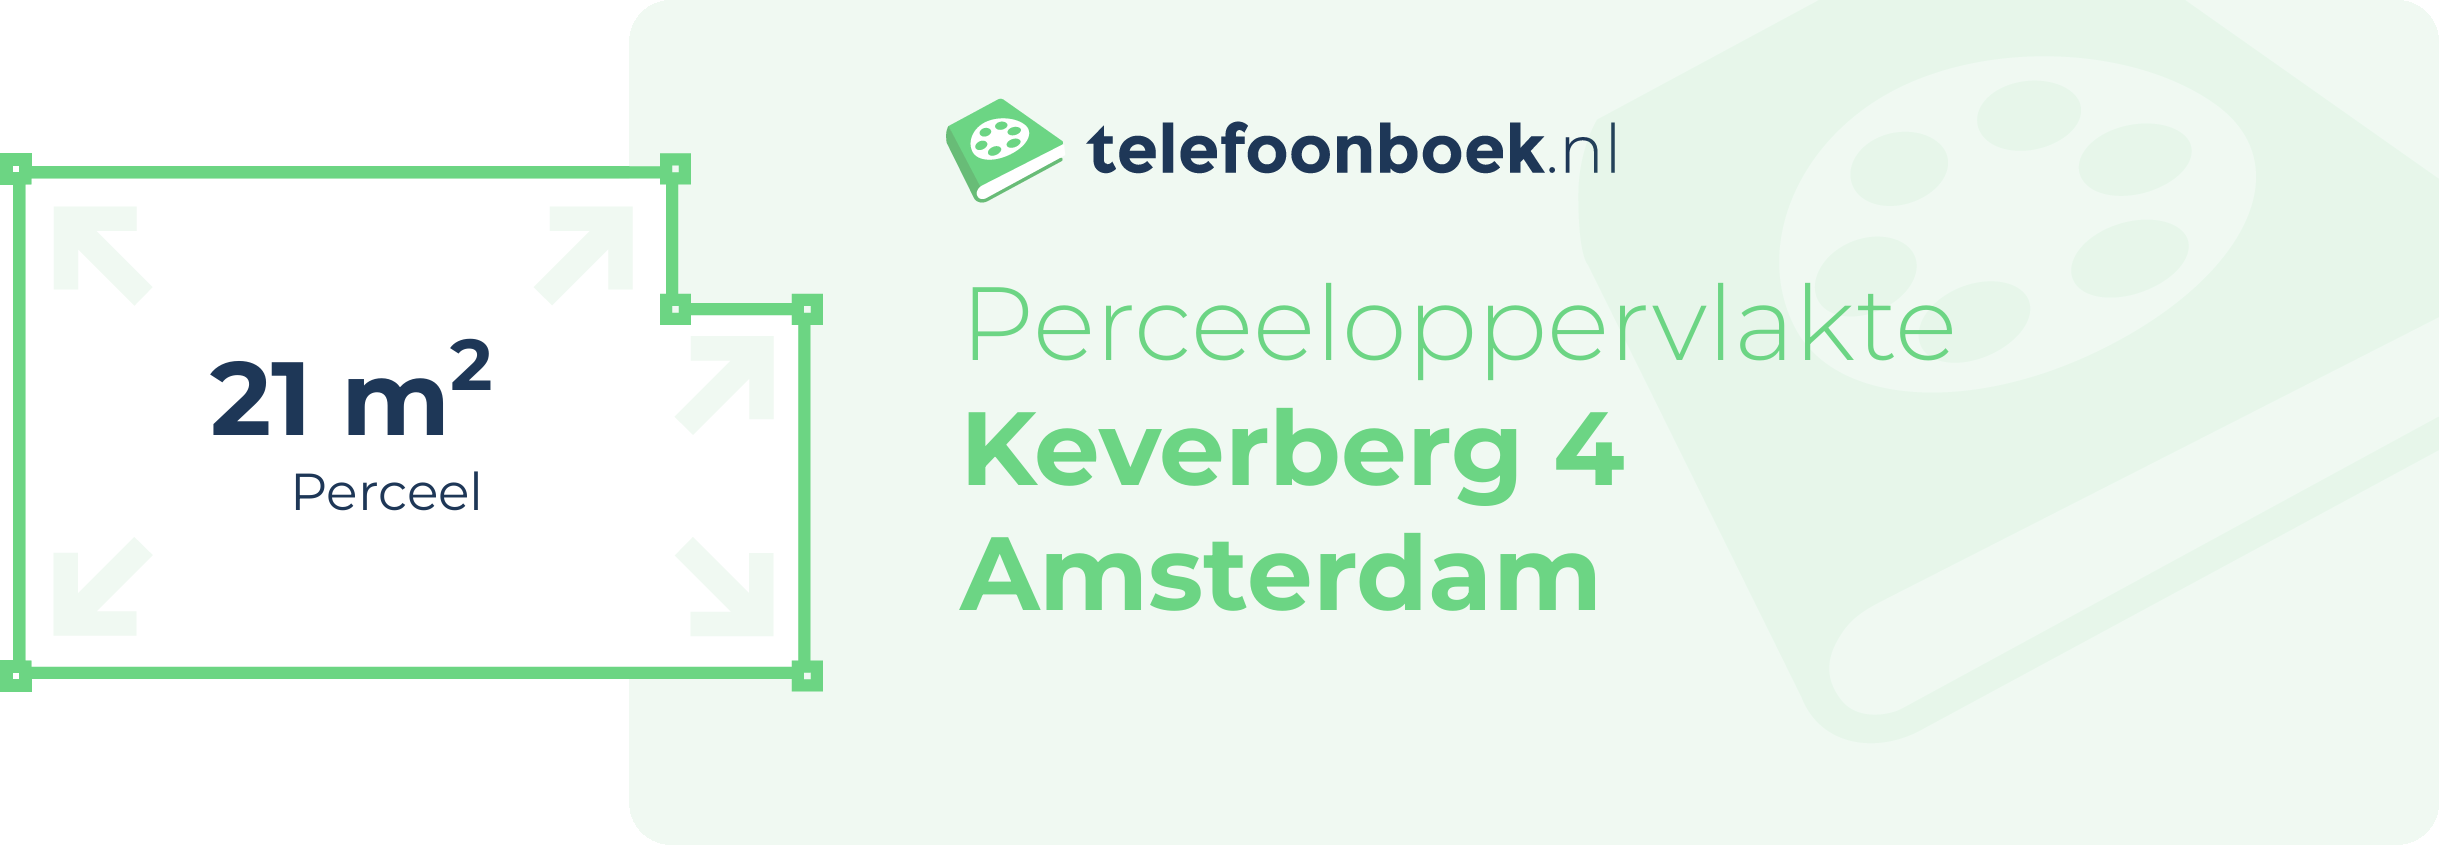 Perceeloppervlakte Keverberg 4 Amsterdam